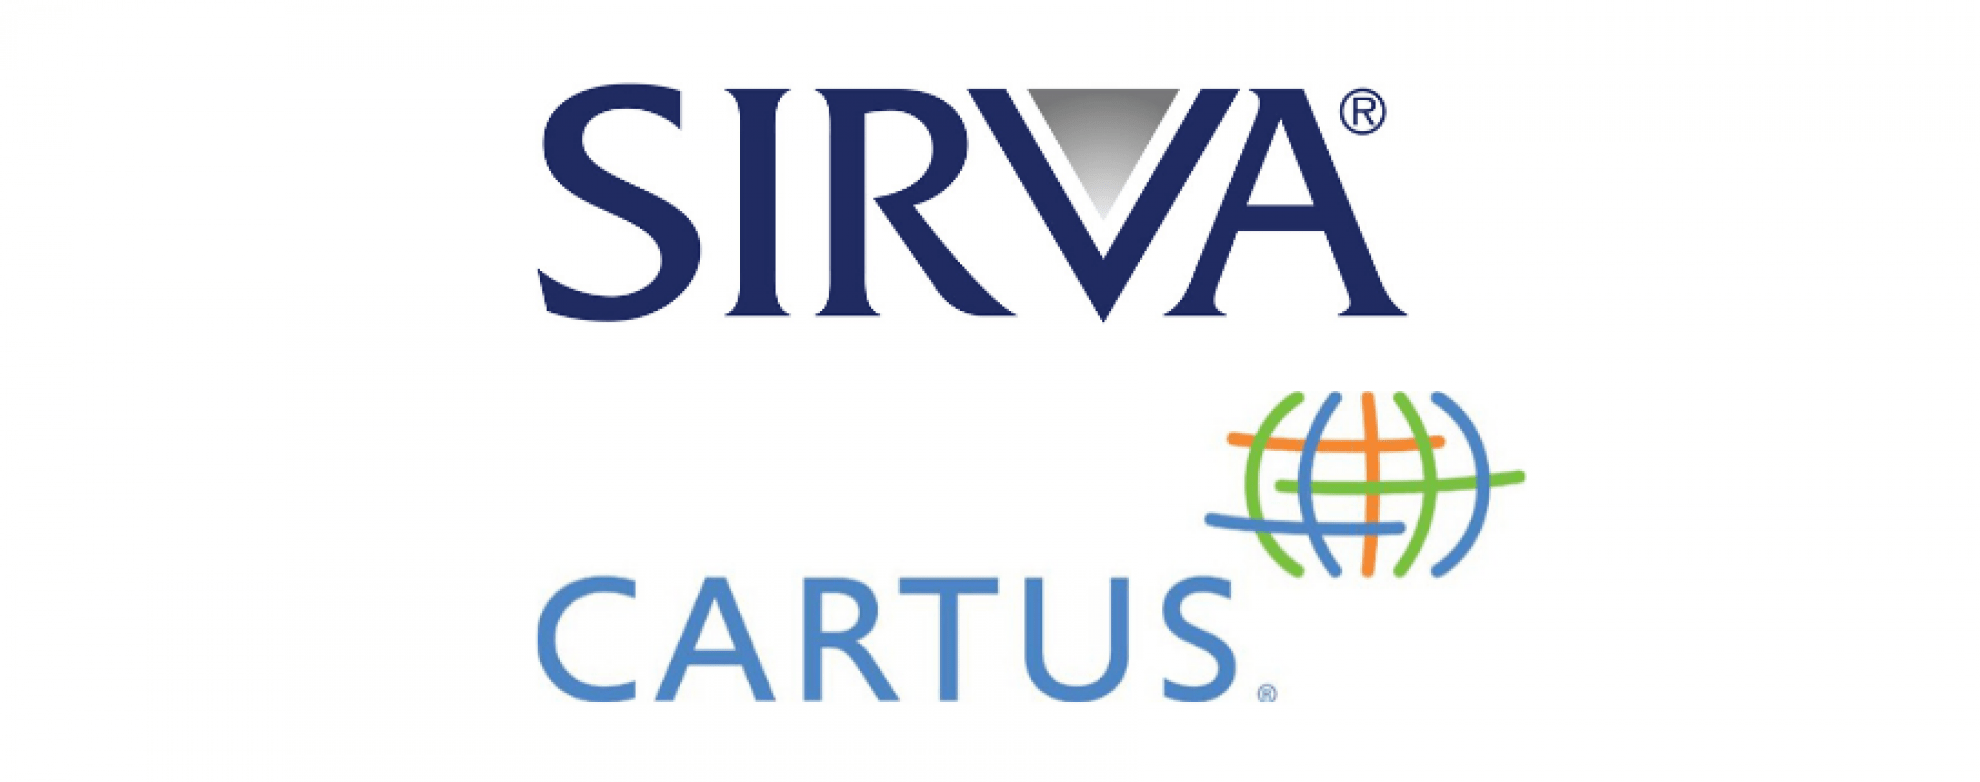 SIRVA and Cartus logos